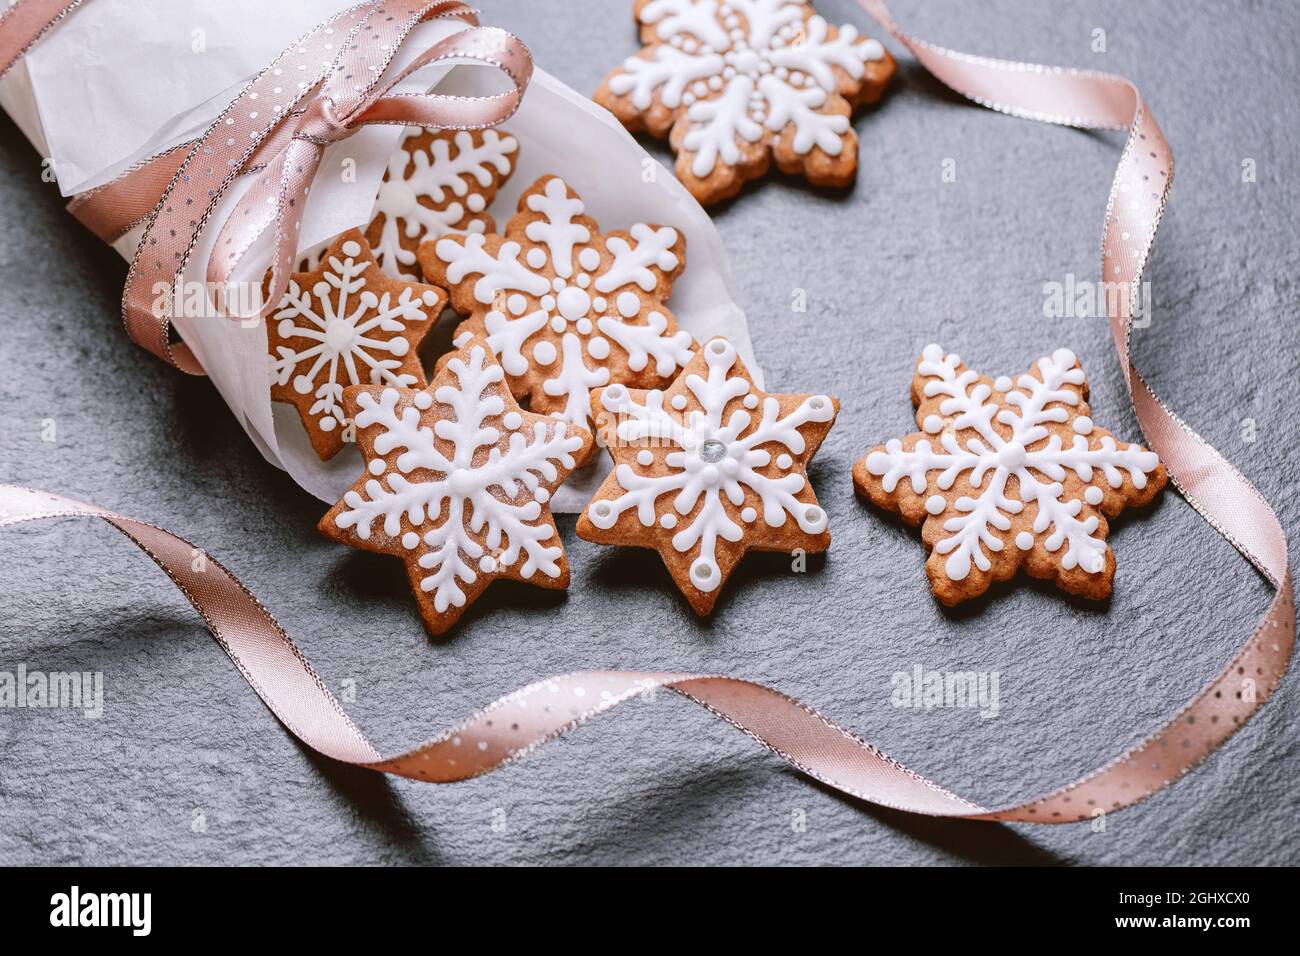 biscotti con fiocchi di neve di pan di zenzero su tovagliolo Foto Stock